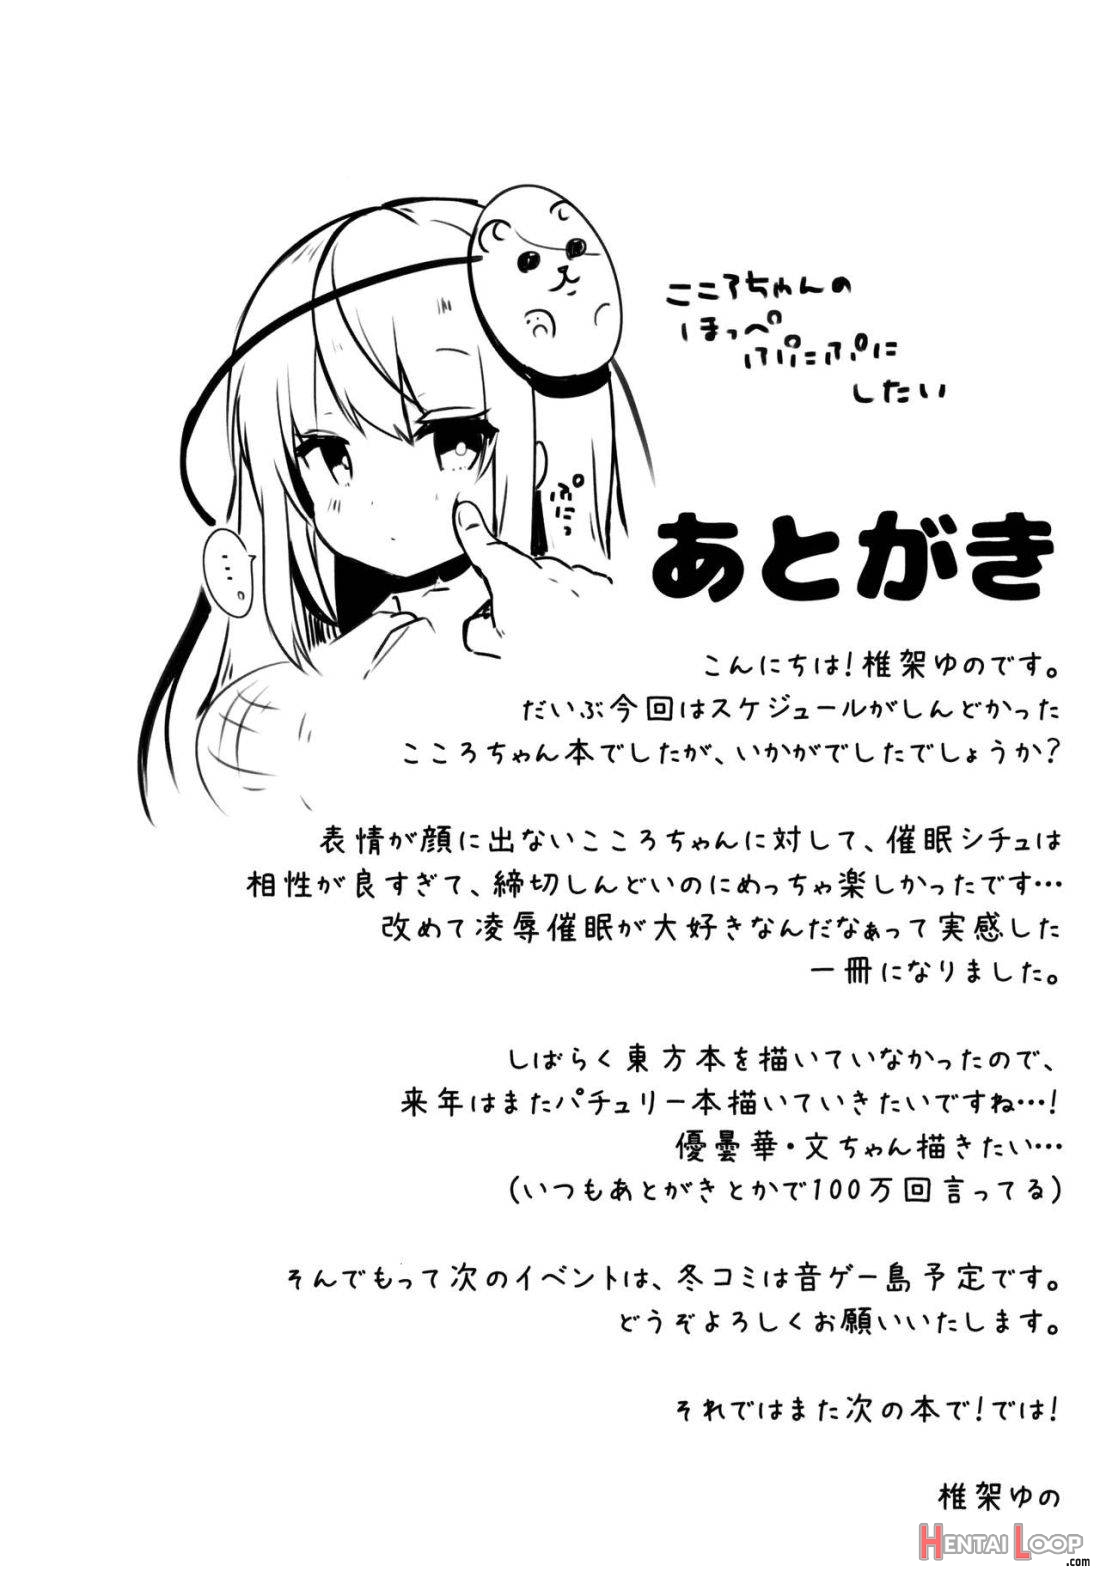 Kokoro-chan to Jouzu ni Dekiru kana? page 17